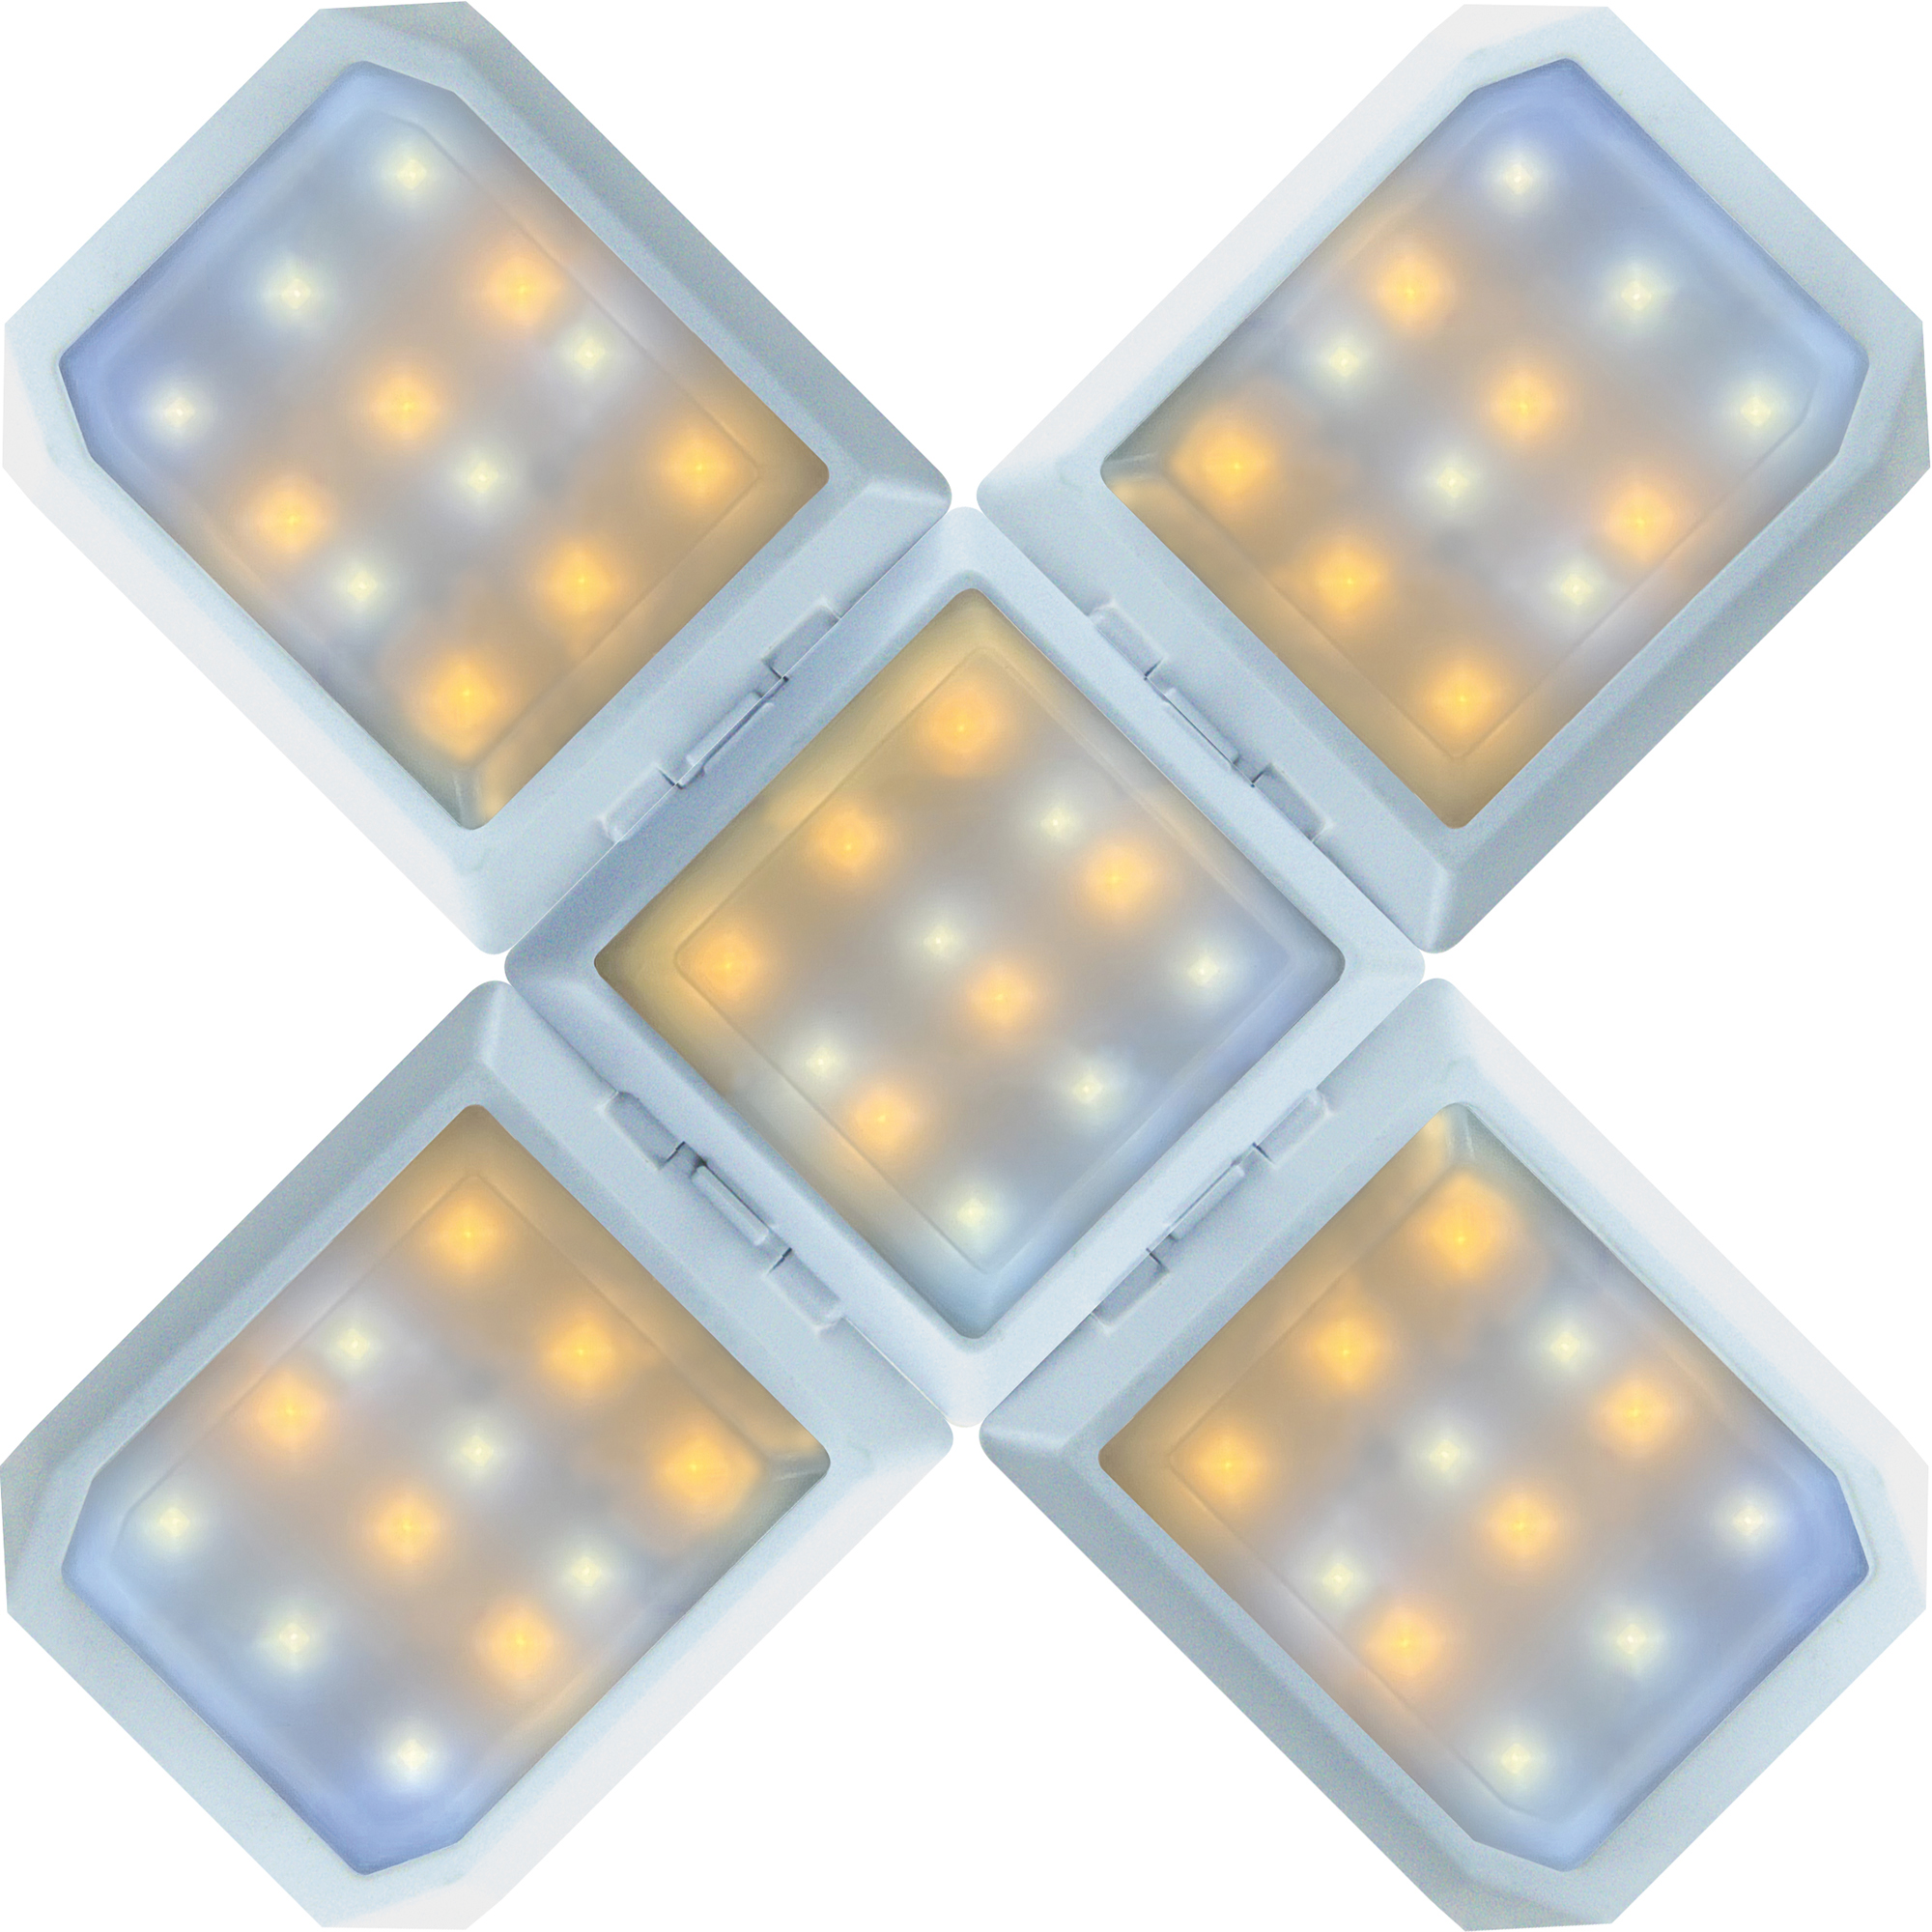 SCHWAIGER -SOLE0520- LED Leuchte kaltweiß, mischlicht warmweiß